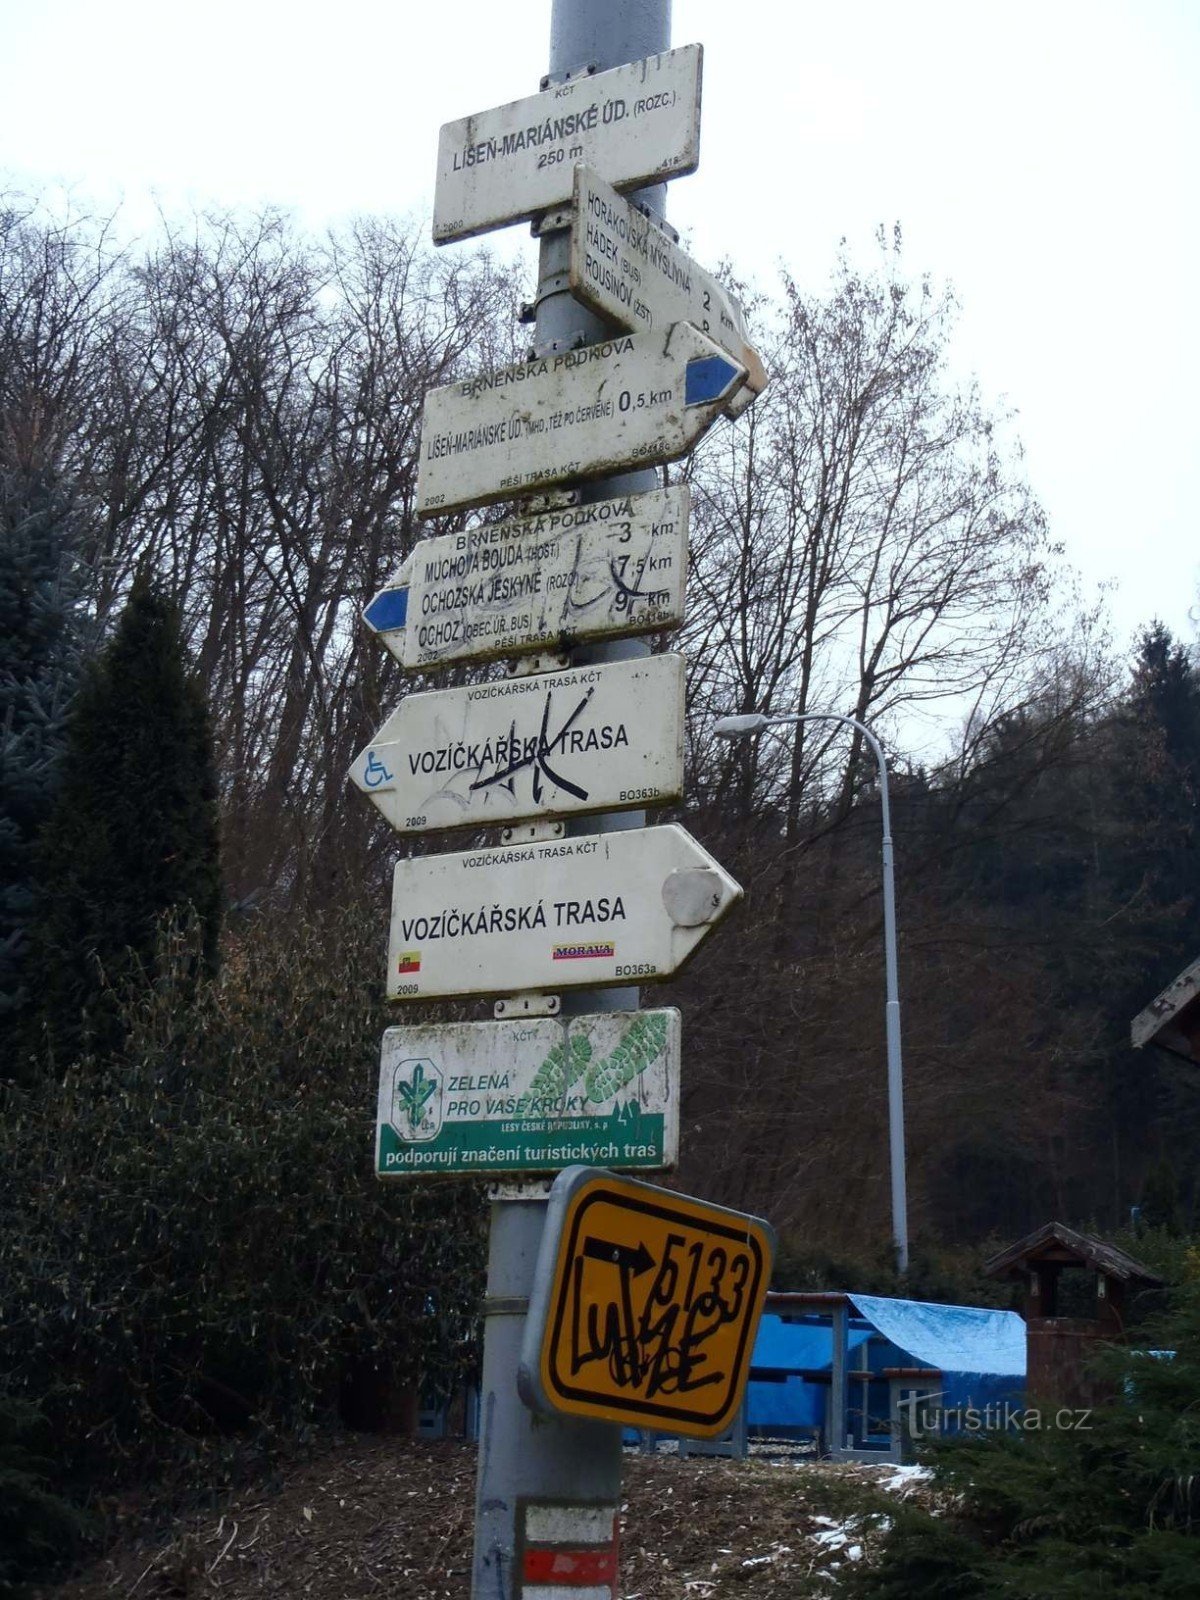 Placa de sinalização Mariánské údolí U Raka - 6.2.2012 de fevereiro de XNUMX